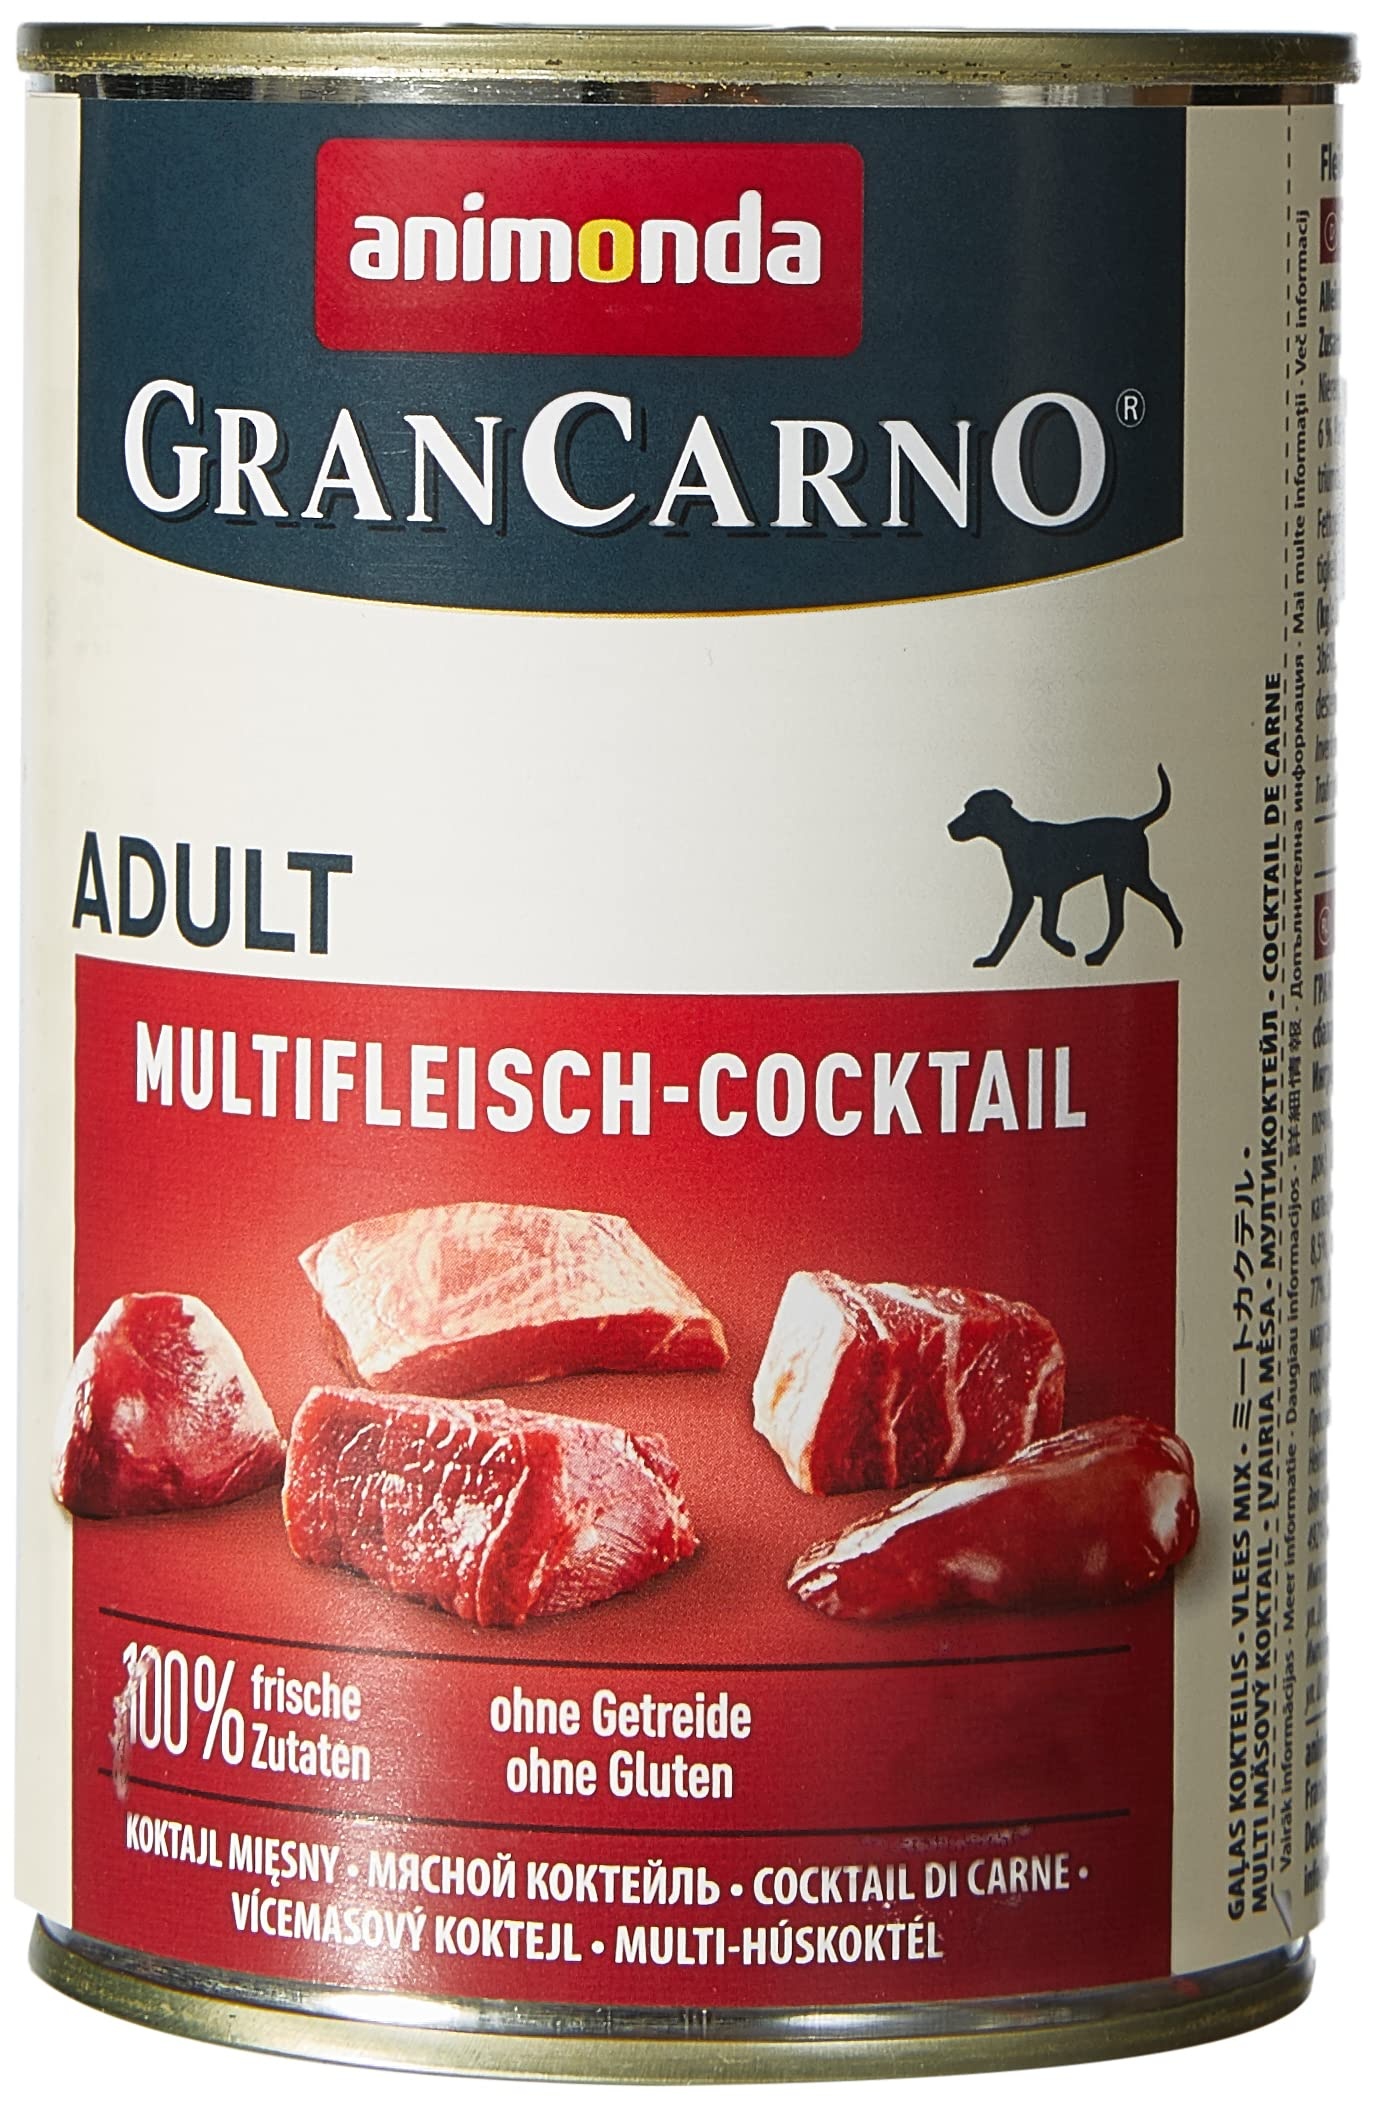 animonda Gran Carno adult Hundefutter, Nassfutter für erwachsene Hunde, Multifleisch-Cocktail, 6 x 400 g